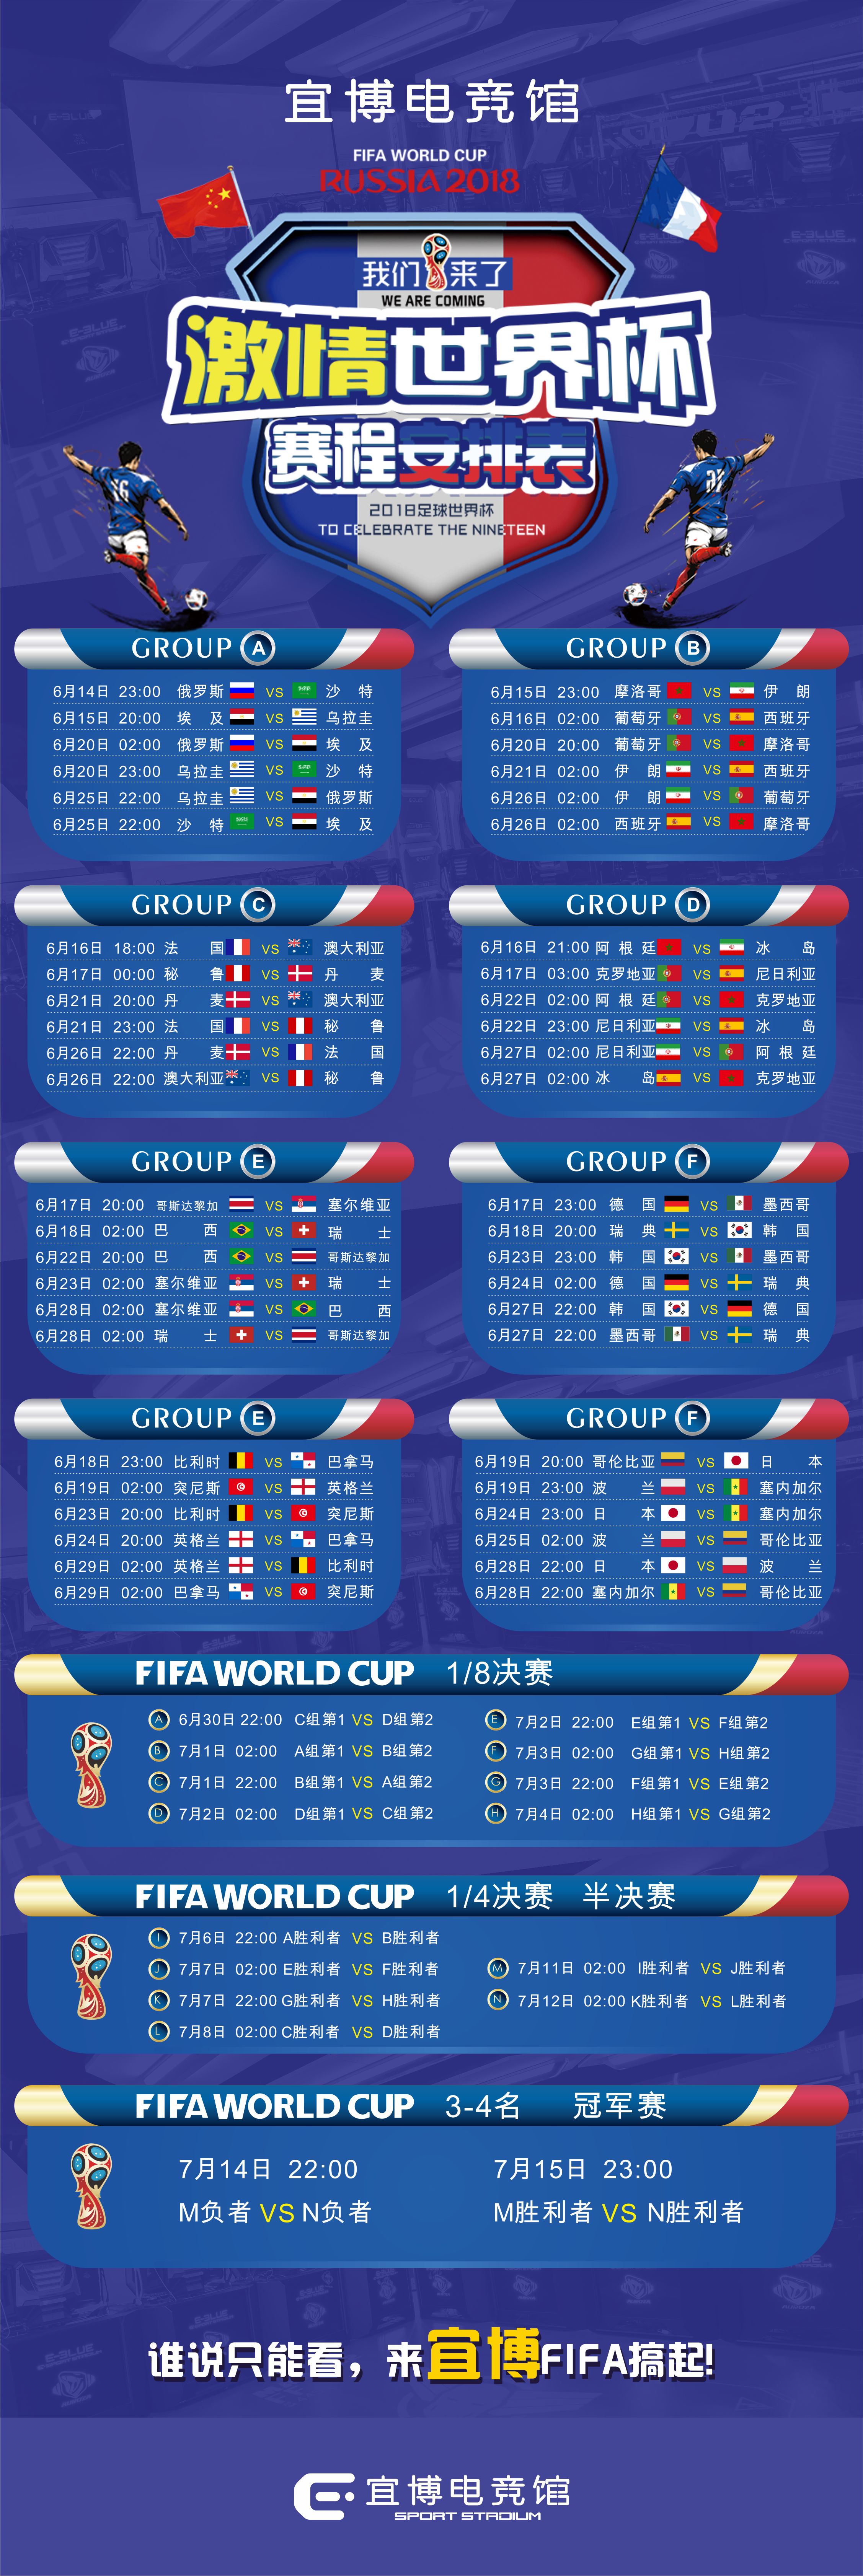 世界杯2014赛程表的简单介绍